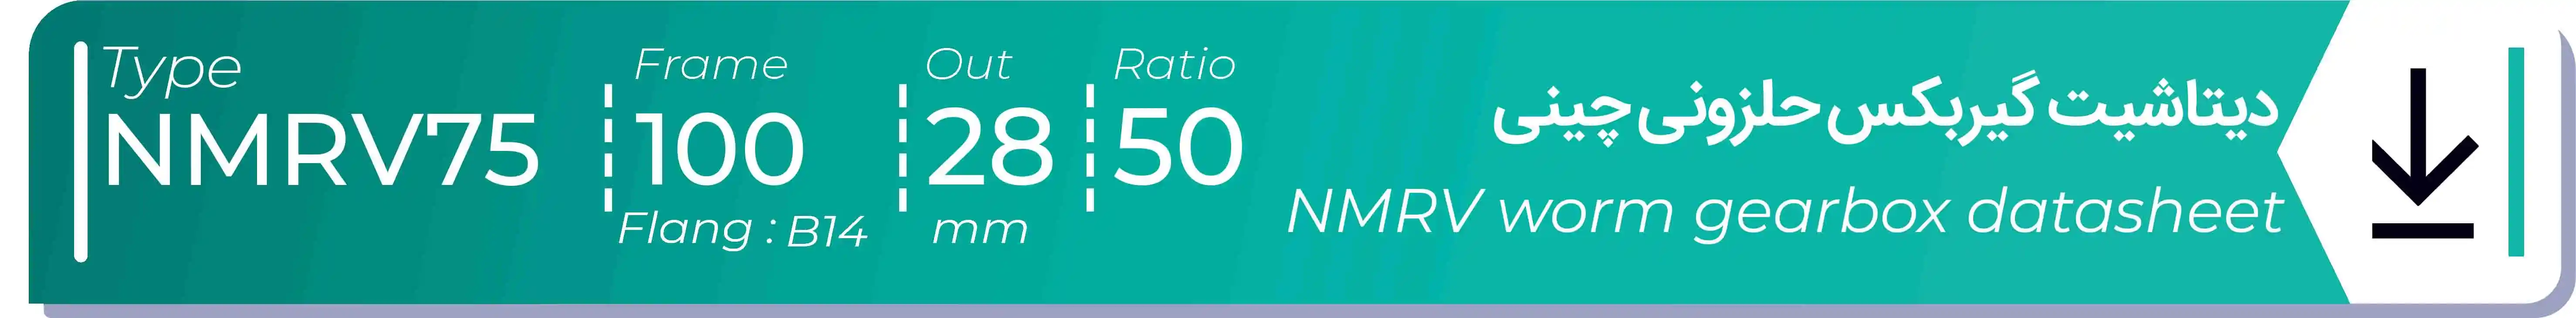  دیتاشیت و مشخصات فنی گیربکس حلزونی چینی   NMRV75  -  با خروجی 28- میلی متر و نسبت50 و فریم 100